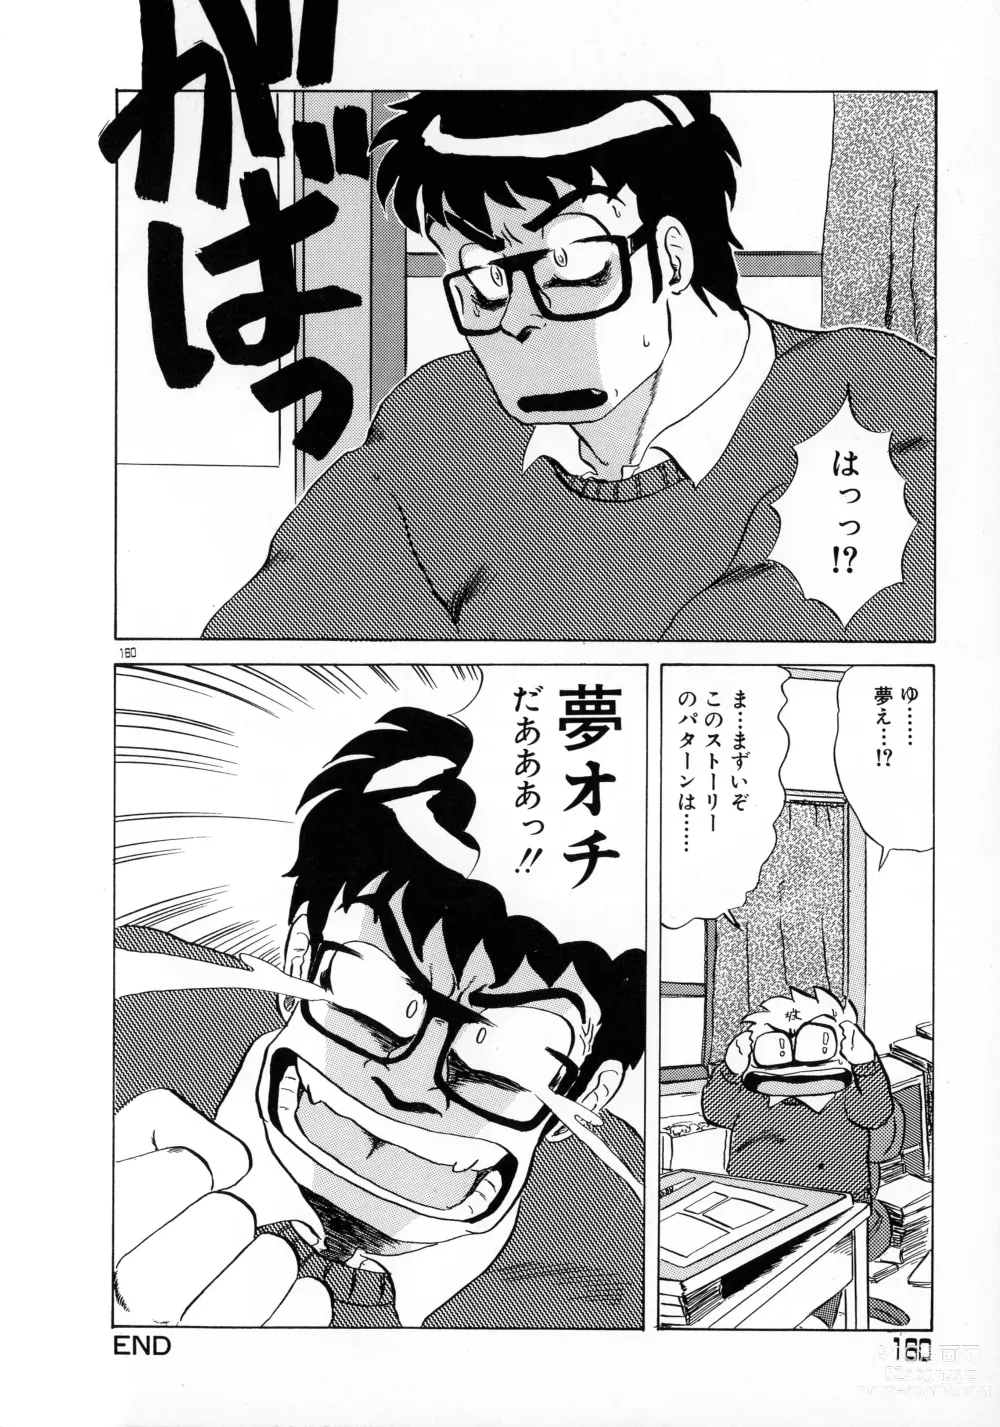 Page 158 of manga Akai Miwaku